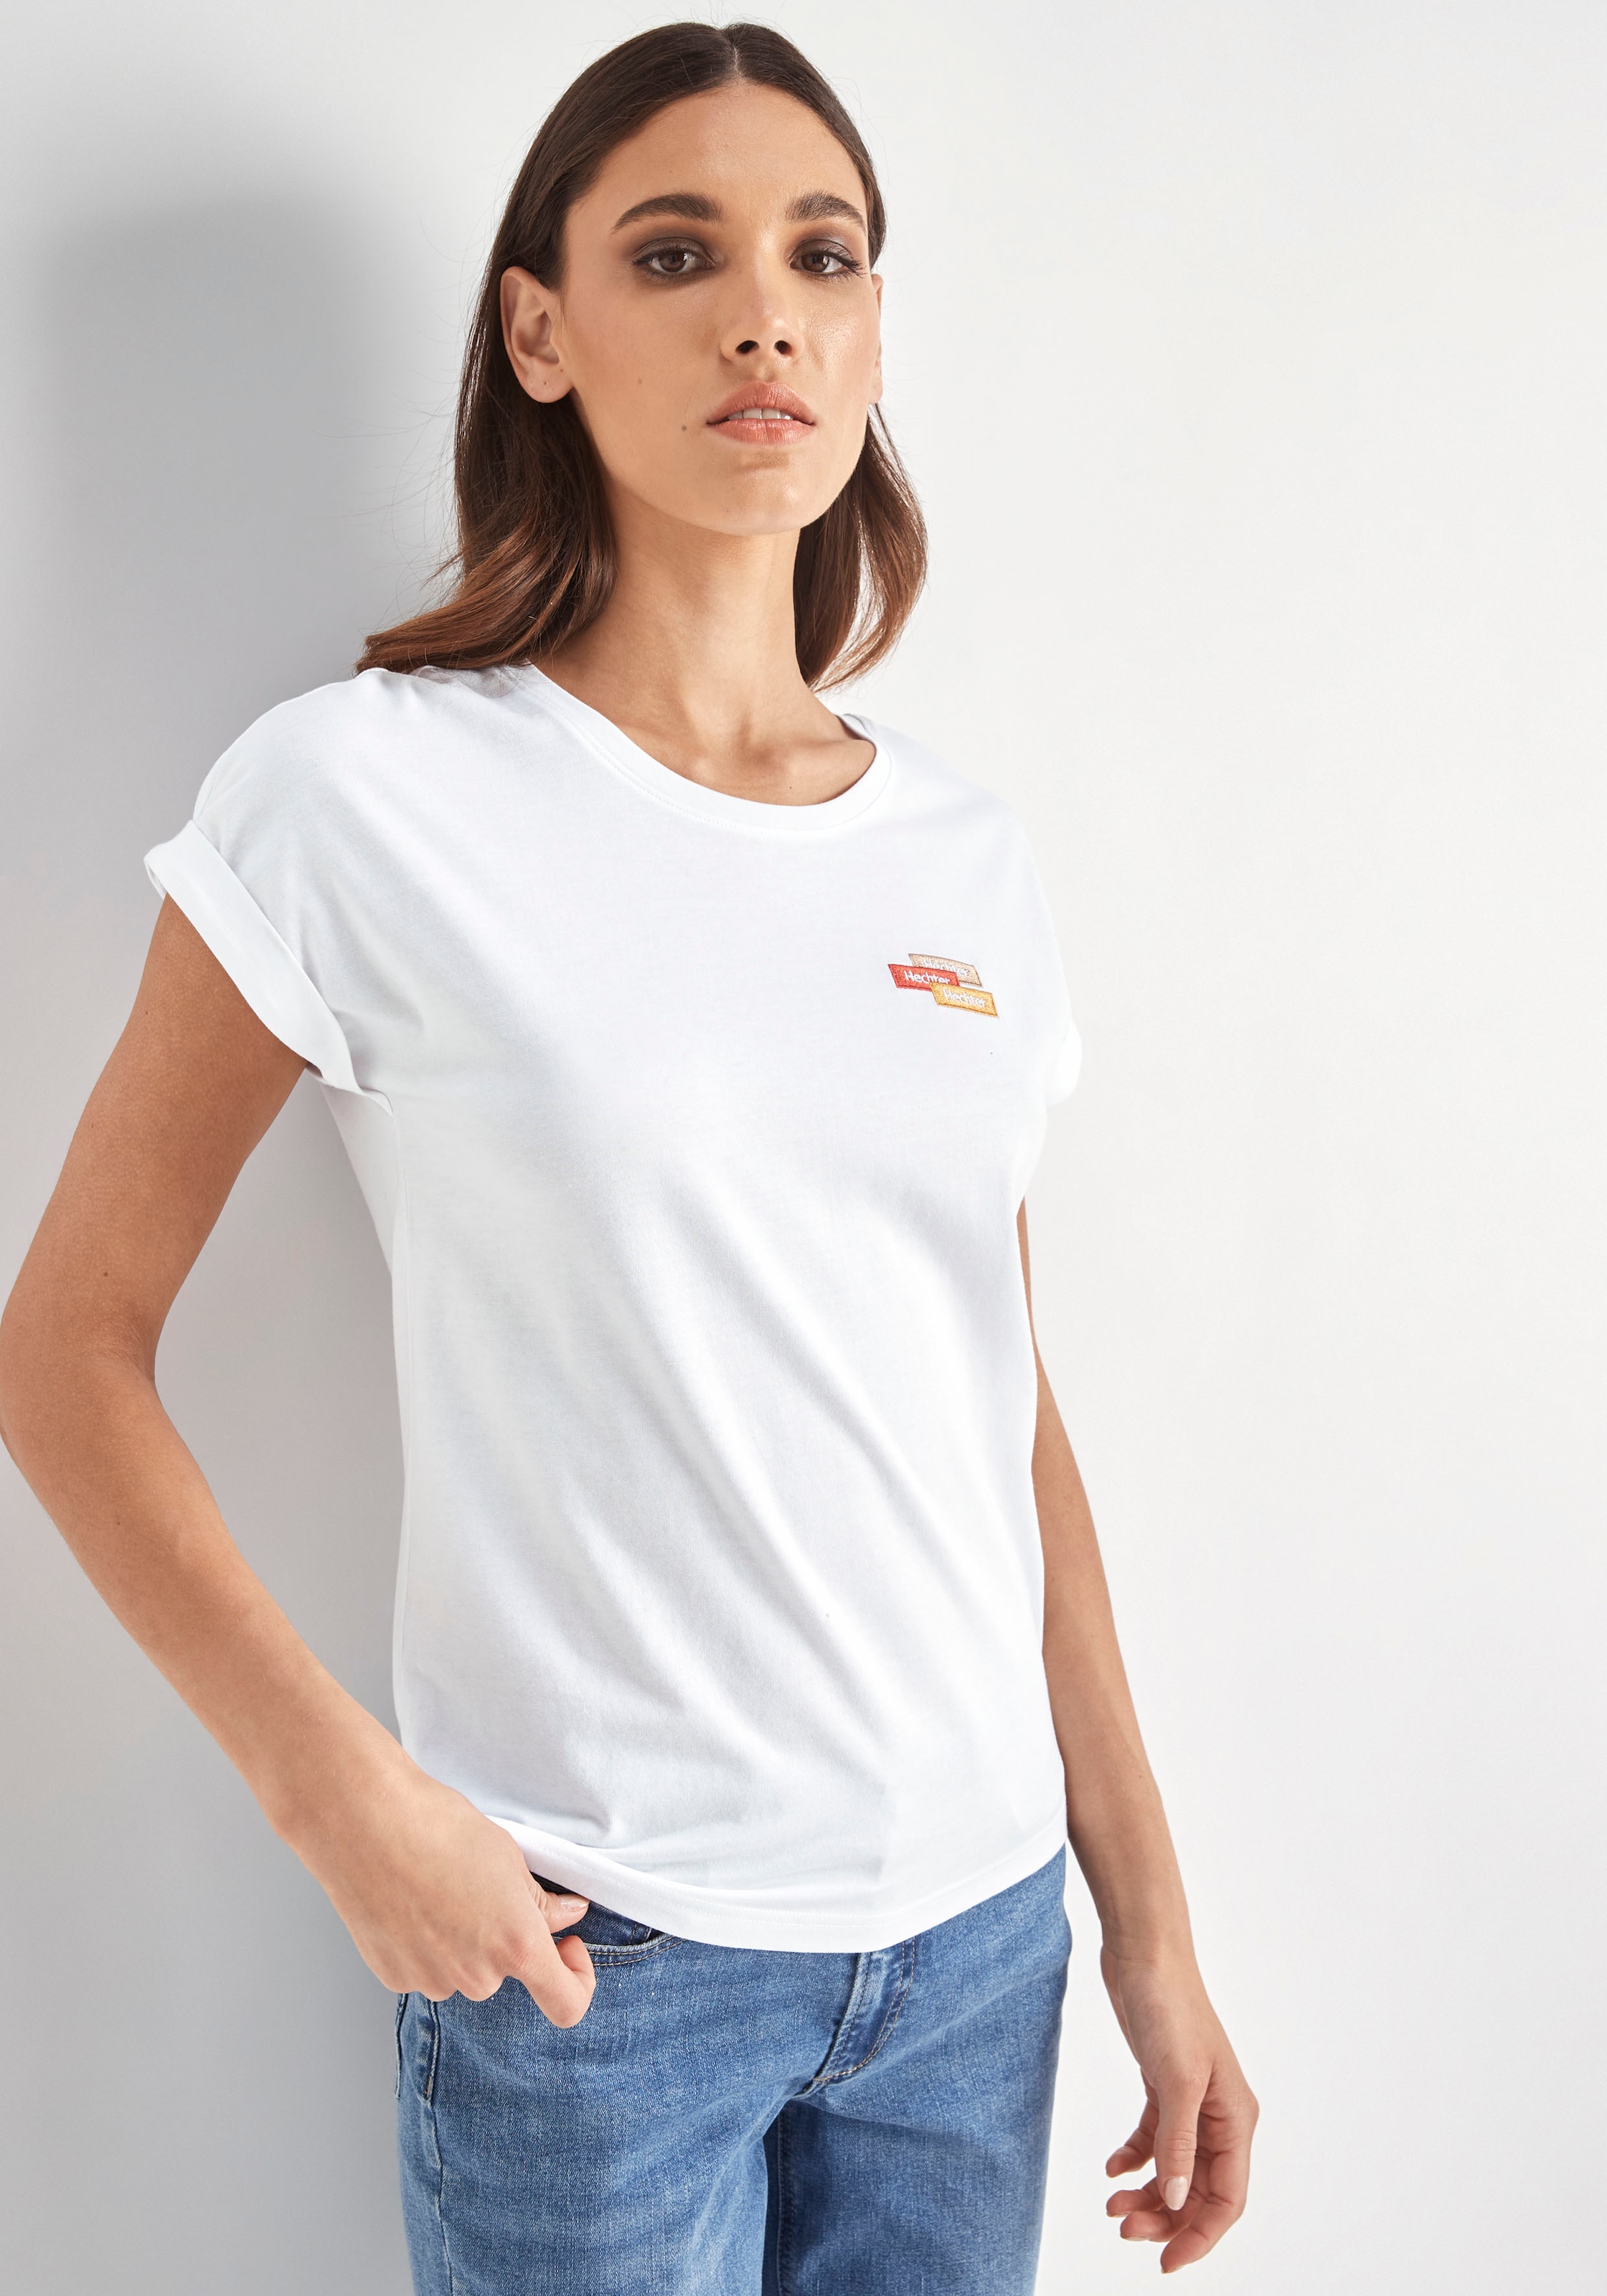 Logostickerei mit shoppen PARIS Schweiz HECHTER online dezenter auf T-Shirt, Brust bei Jelmoli-Versand der